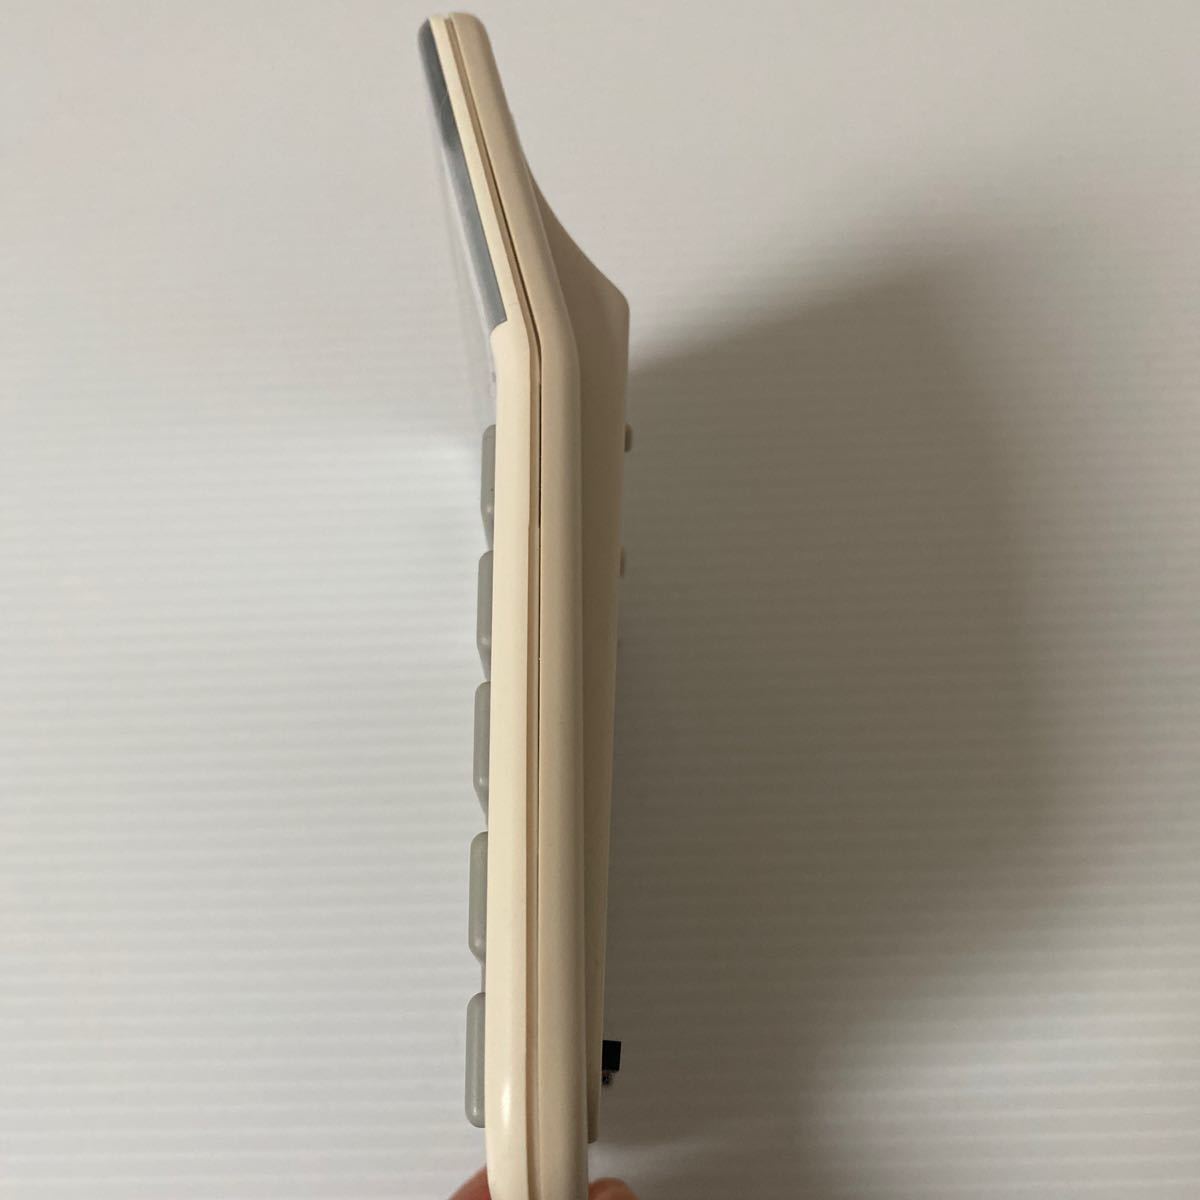 Apple canon LS-100H 计算机アップル 中古 古い物ご理解顶ける方 13×10×厚み約2cm 剧レア アップル计算机 コレクションに